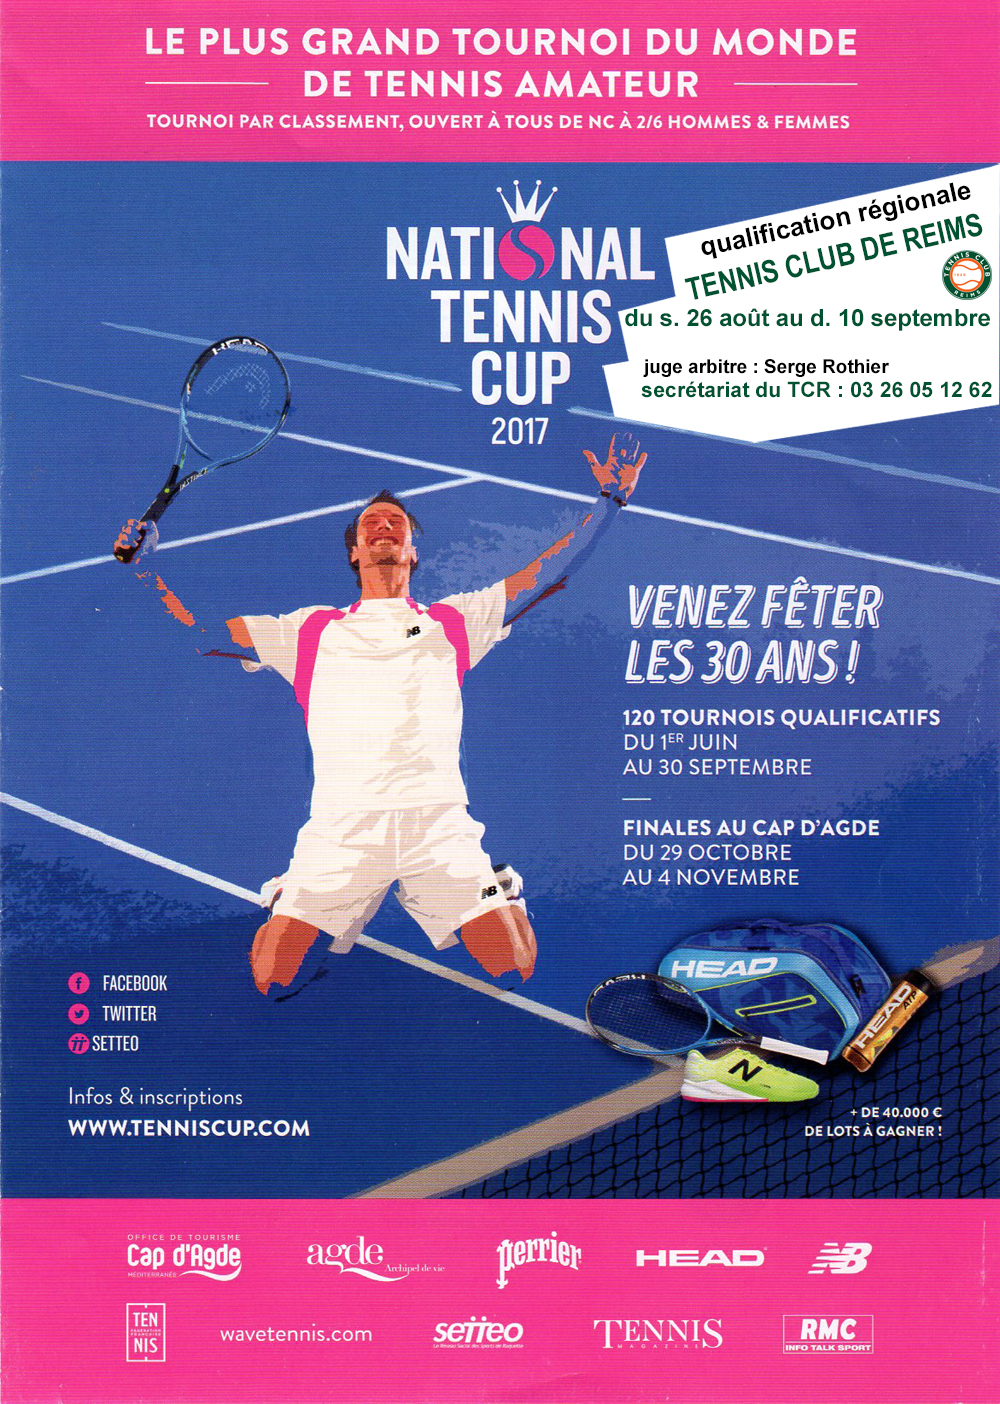 Qualification régionale de la « National Tennis Cup » au TCR Tennis